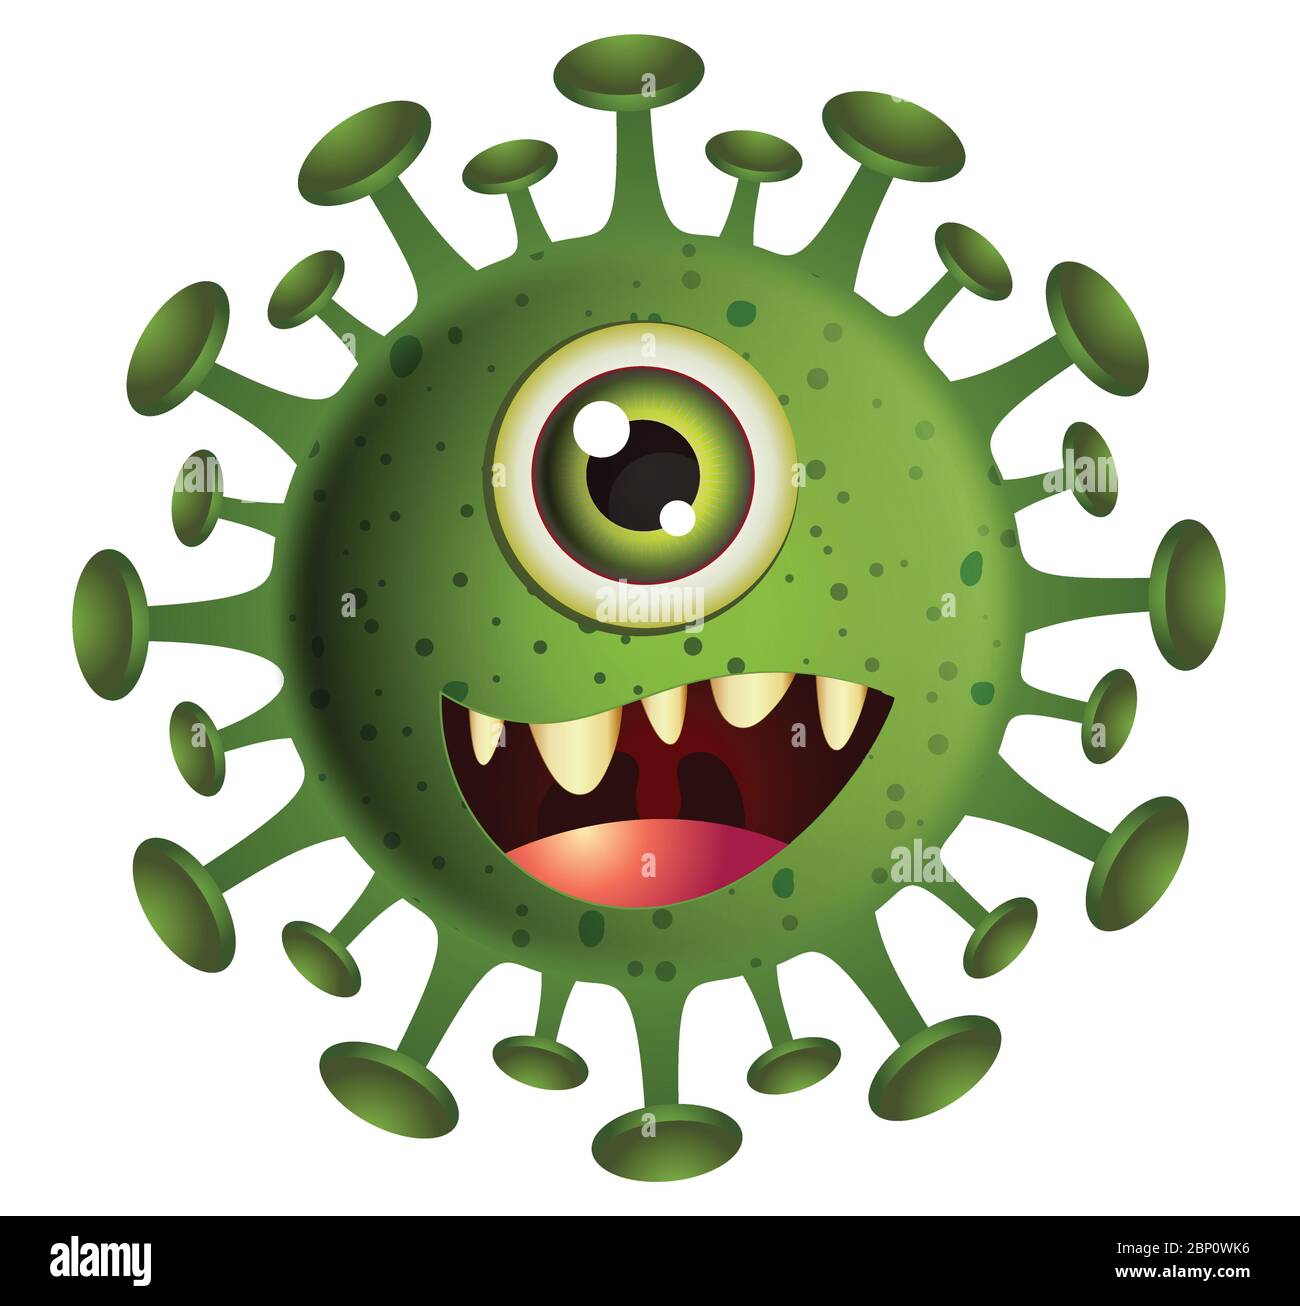 Corona Virus illustration. Green Virus cartoon on white background.Virus vector illustration. Stock Vector